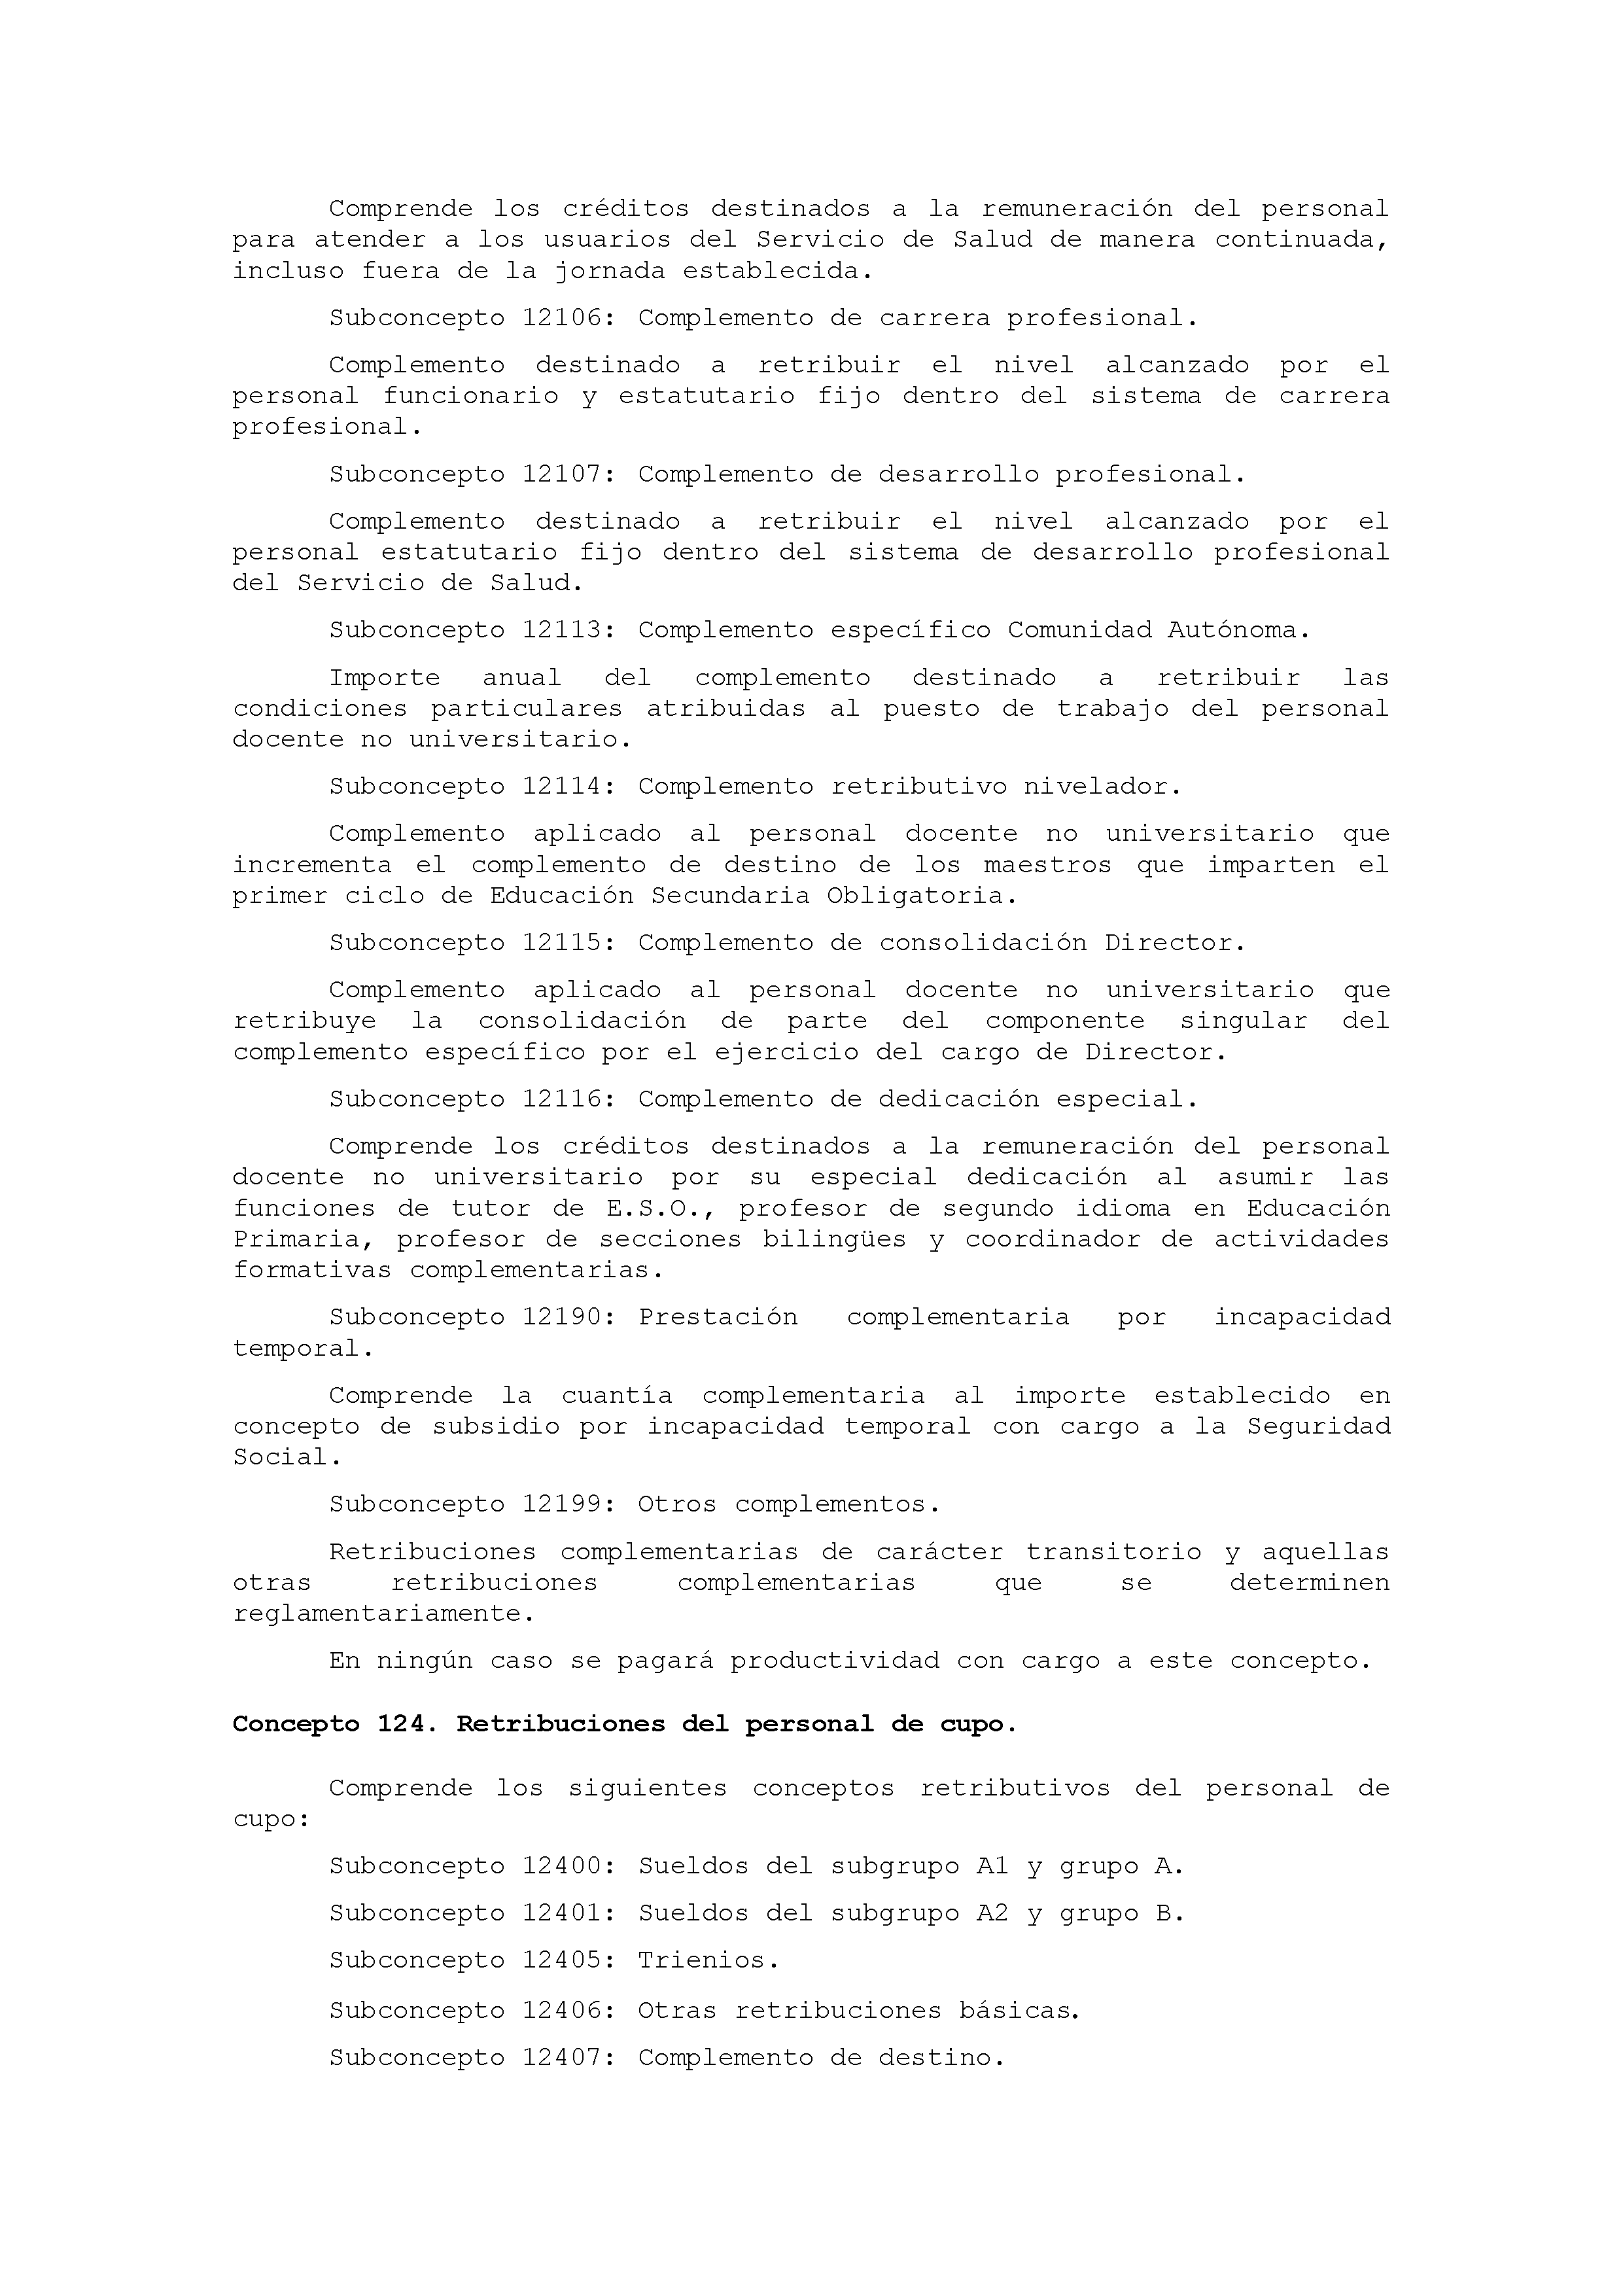 ANEXO IX CÓDIGO DE LA CLASIFICACIÓN ECONÓMICA DE LOS GASTOS PÚBLICOS Pag 6